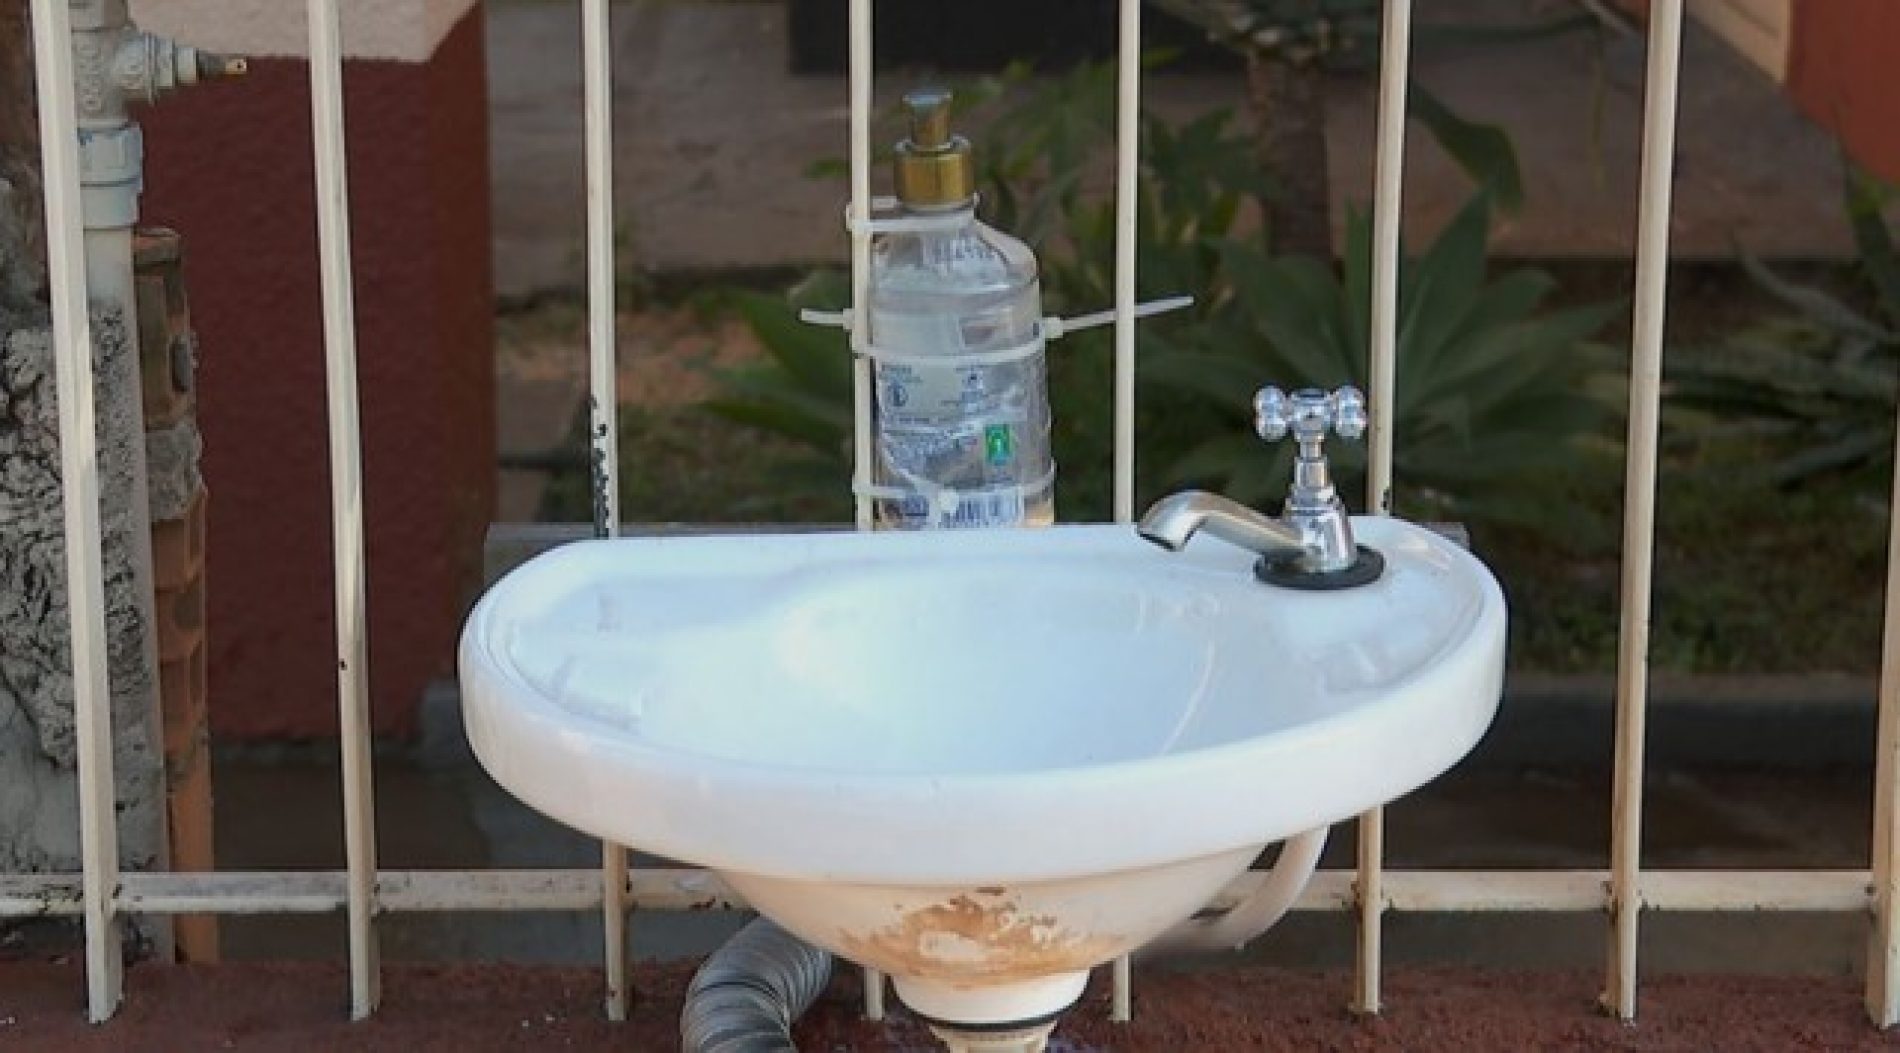 REGIÃO: Asilo instala pia na calçada para higiene de moradores em situação de rua